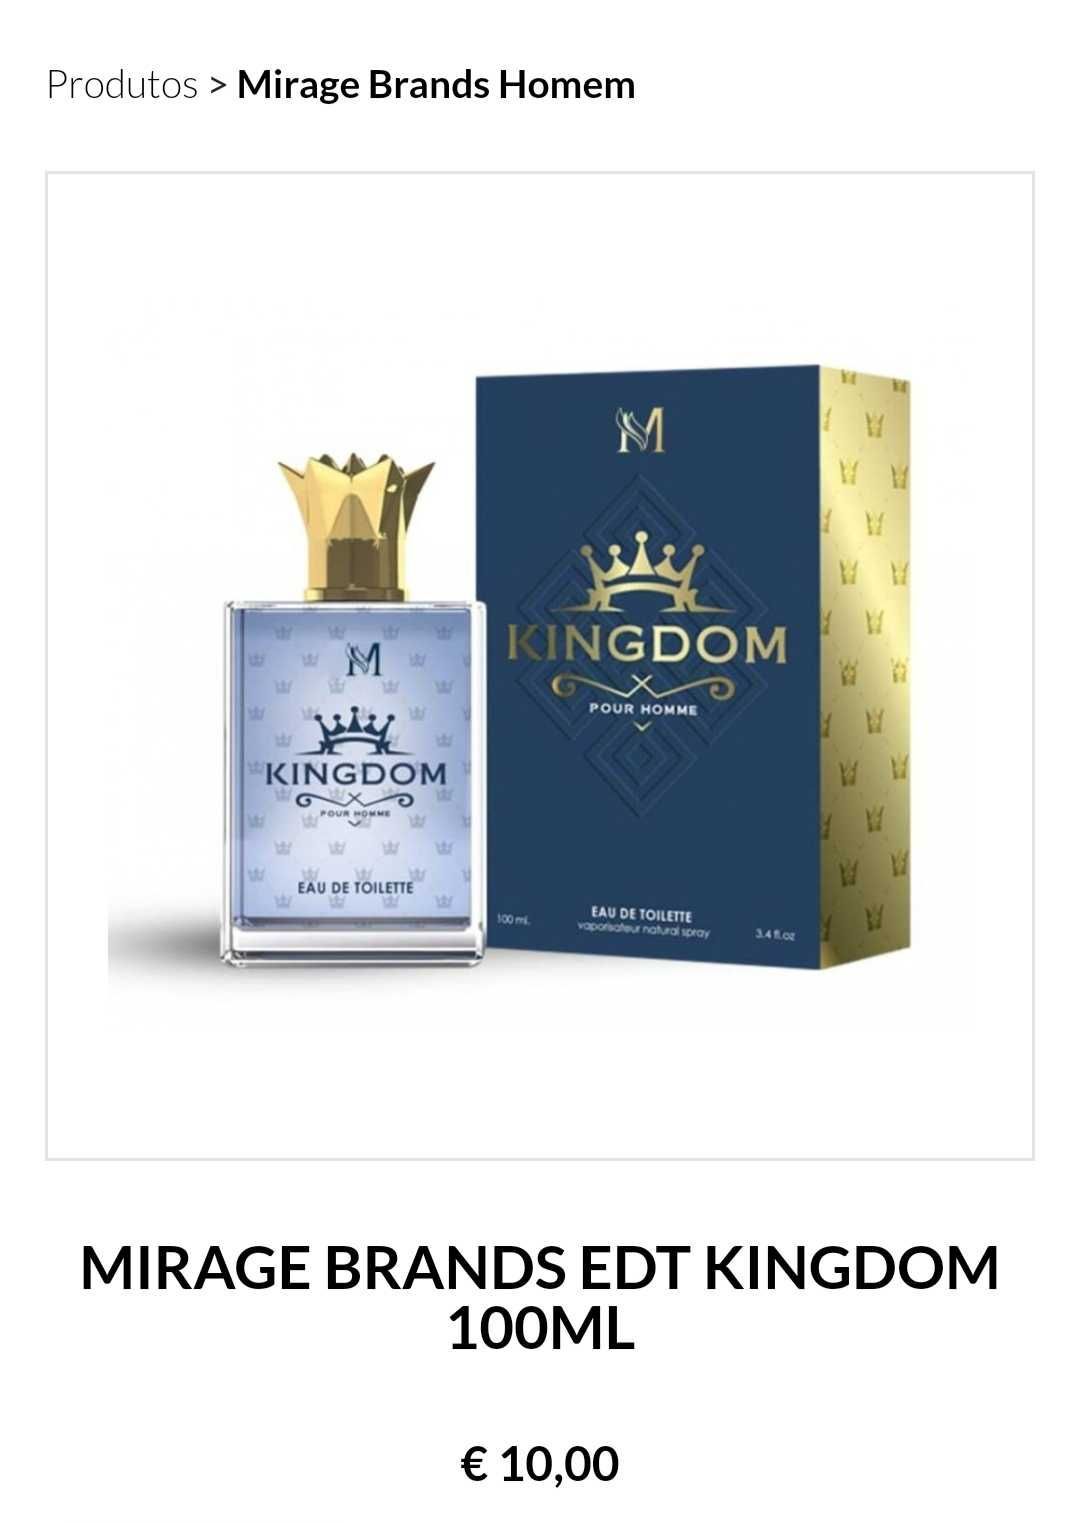 Kingdon Mirage Brands 100ML